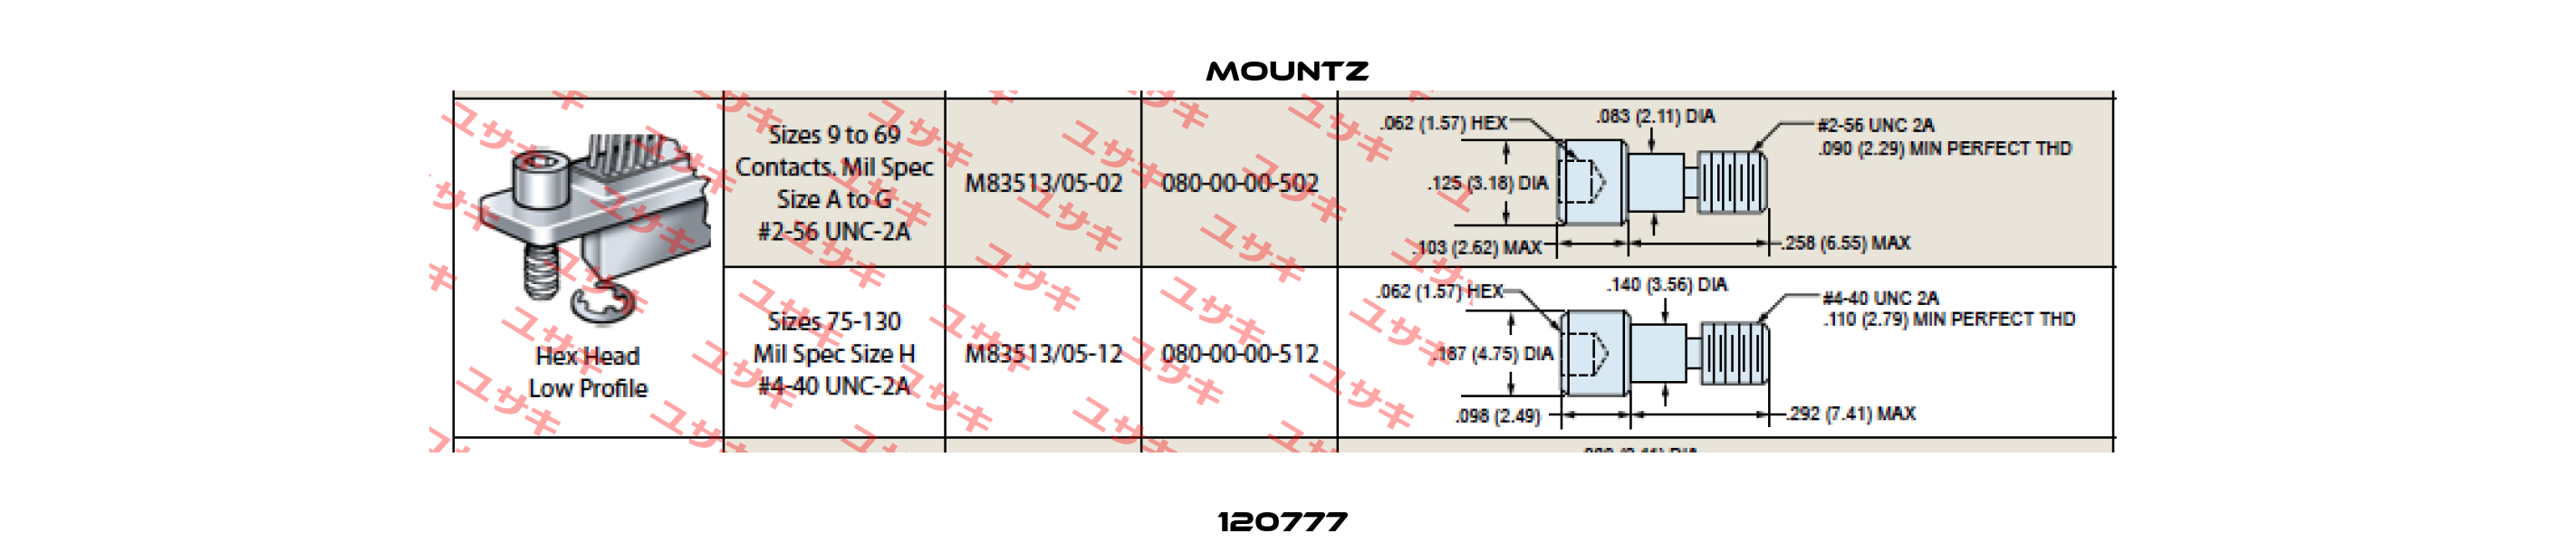 120777  Mountz